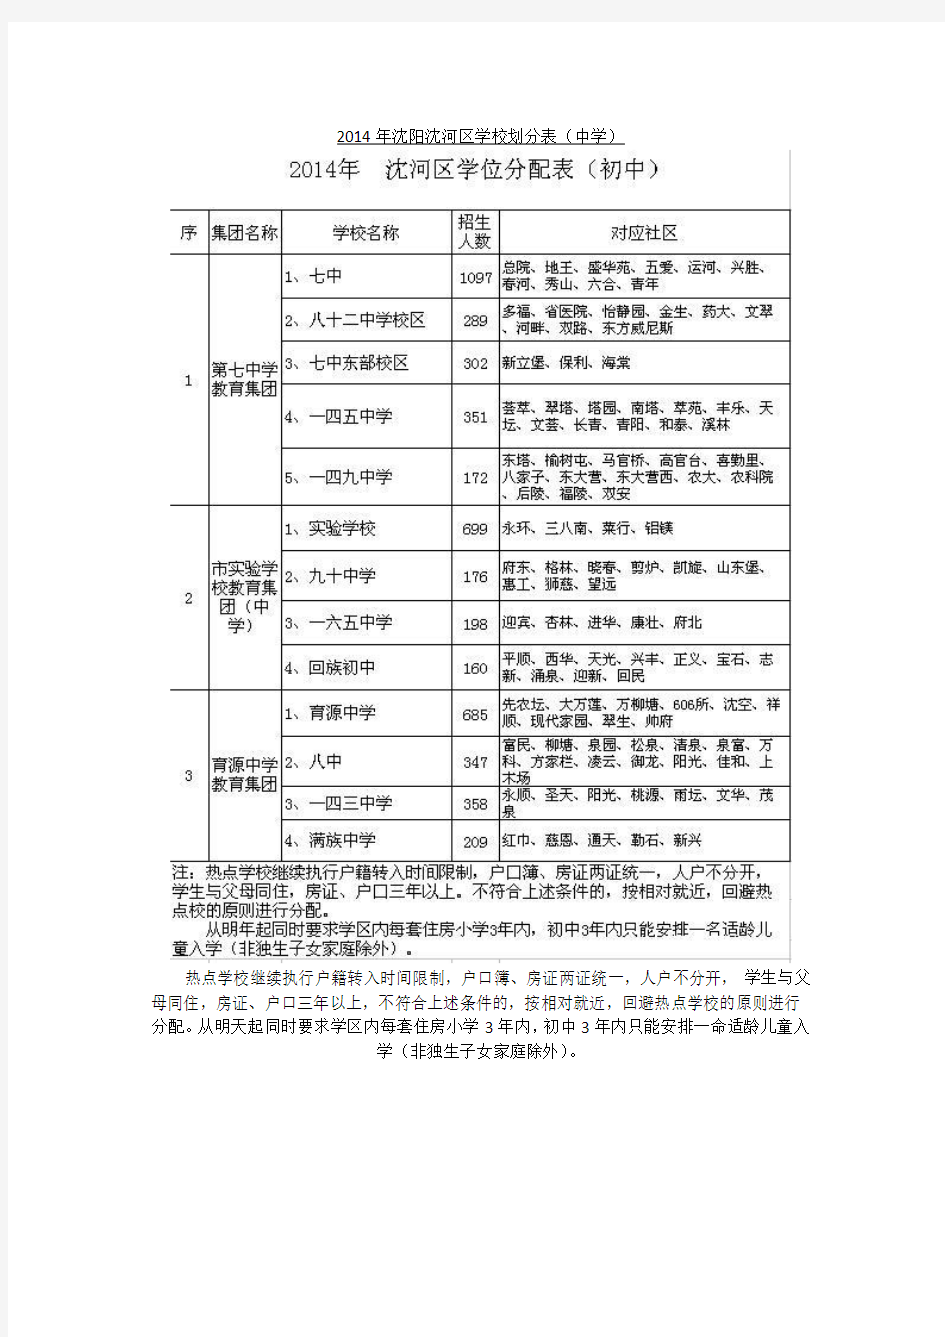 2014年沈阳初中学区划分表